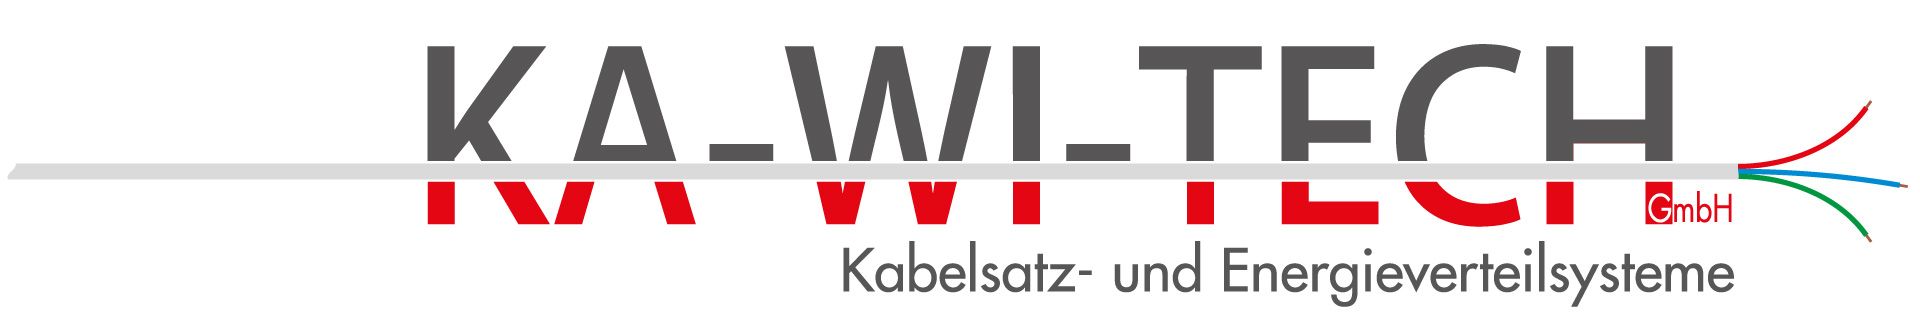 KA-WI-TECH GmbH - Kabelsatz- und Energieverteilungssysteme